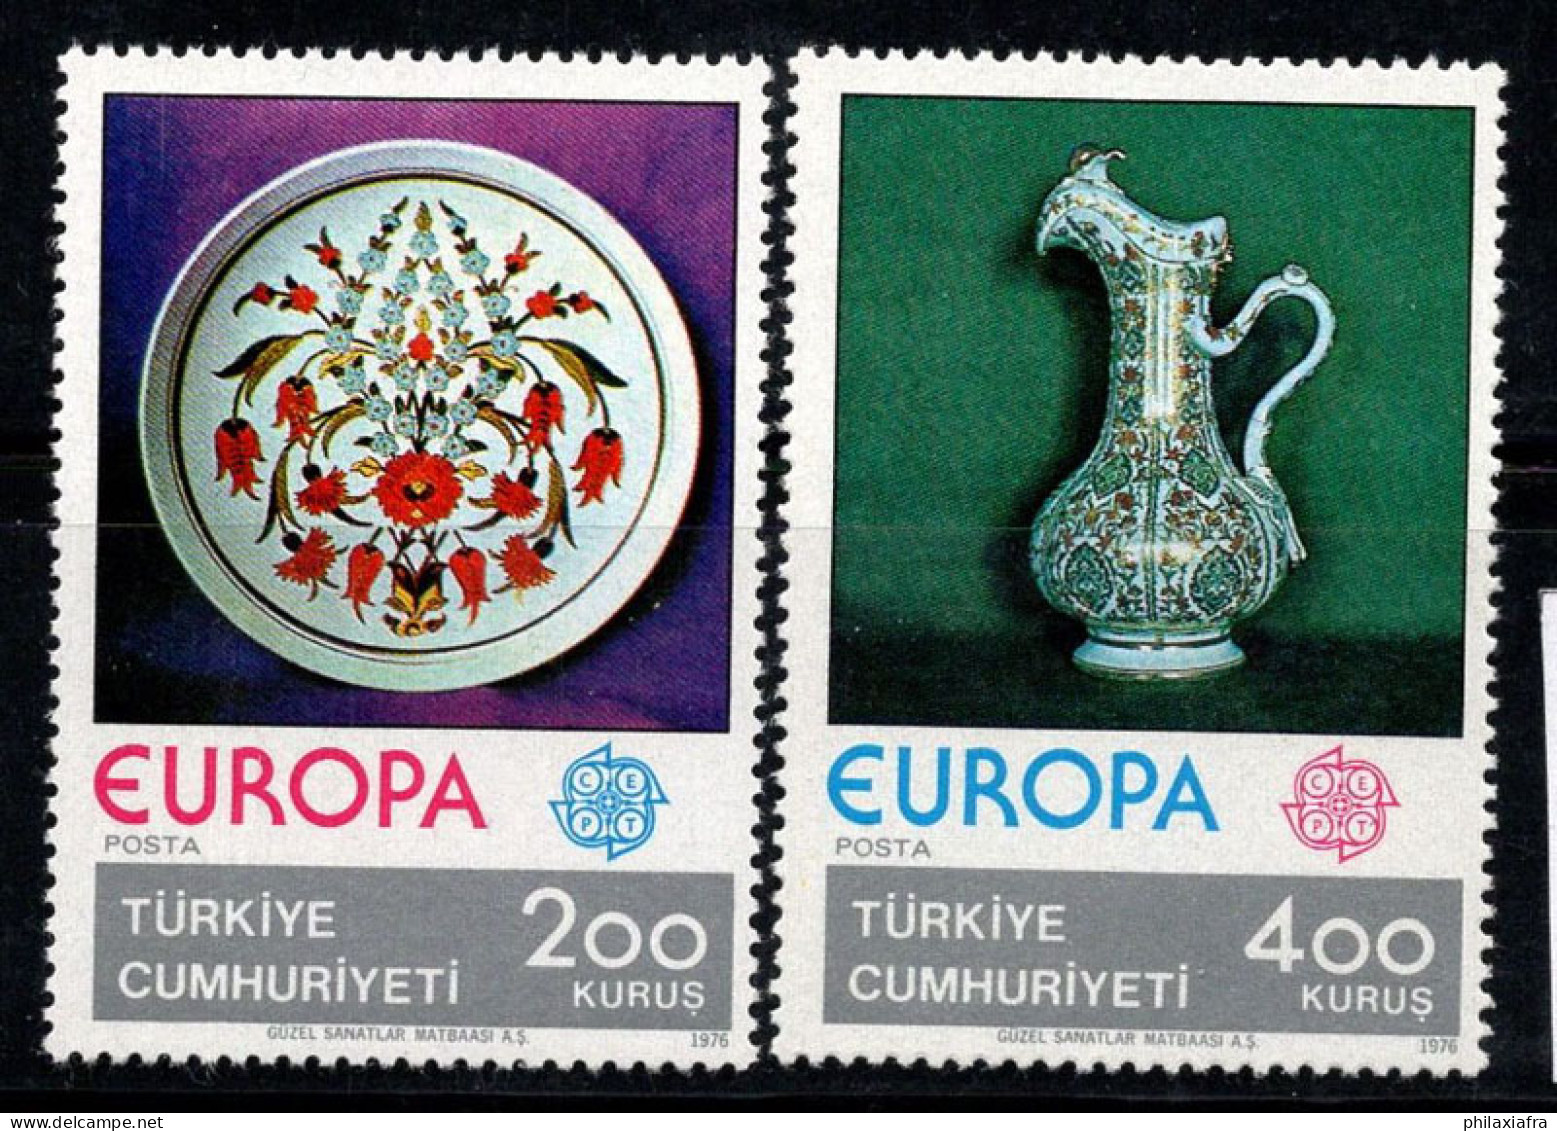 Turquie 1976 Mi. 2385-2386 Neuf ** 100% Europa CEPT, Porcelaine - Ongebruikt